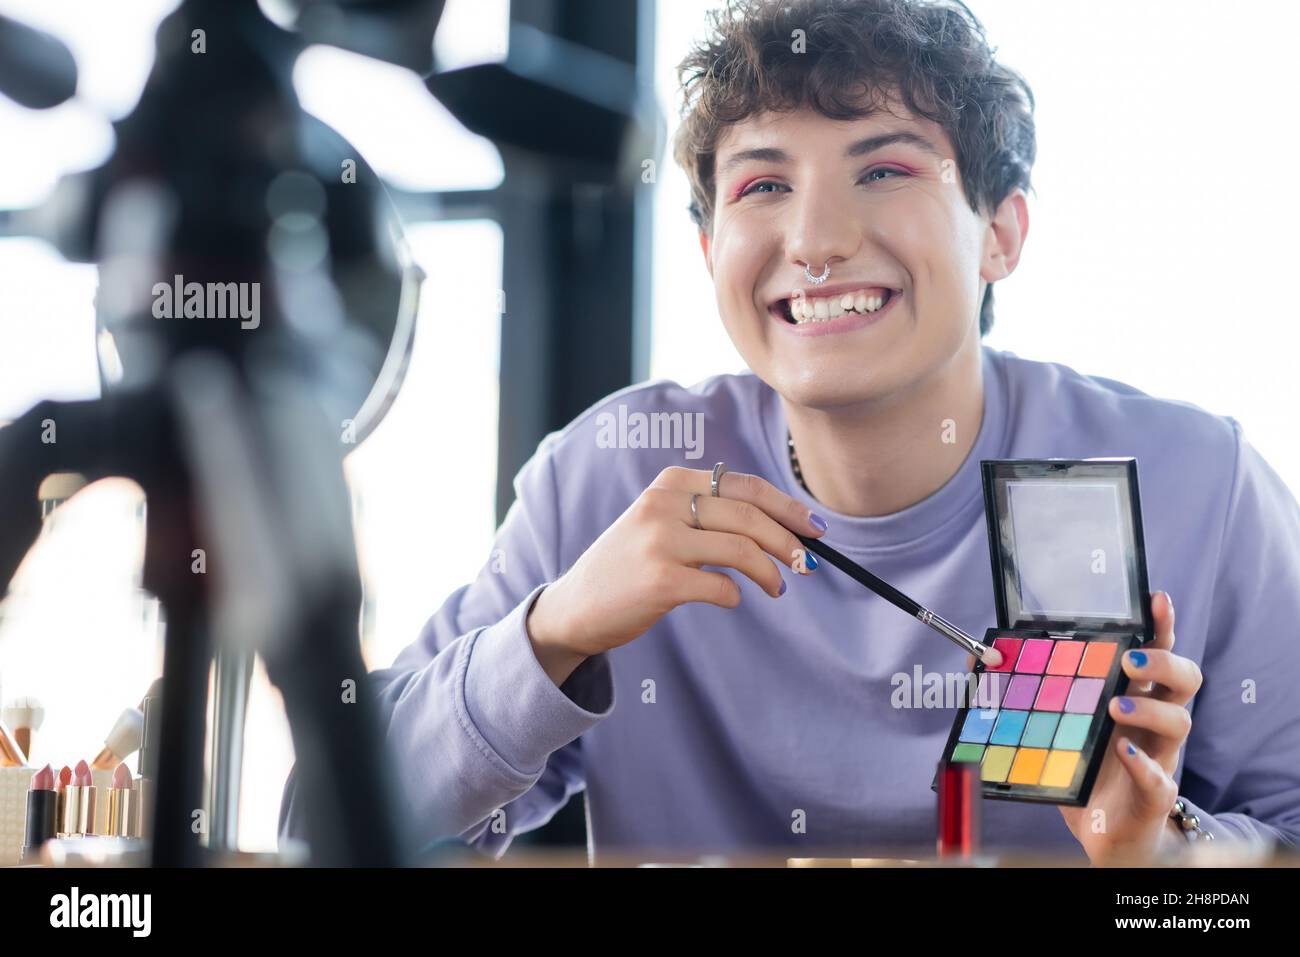 Lächelnde Transgender-Person, die Augenschatten und kosmetische Bürste in der Nähe von Stativ und Spiegel hält, Stockbild Stockfoto